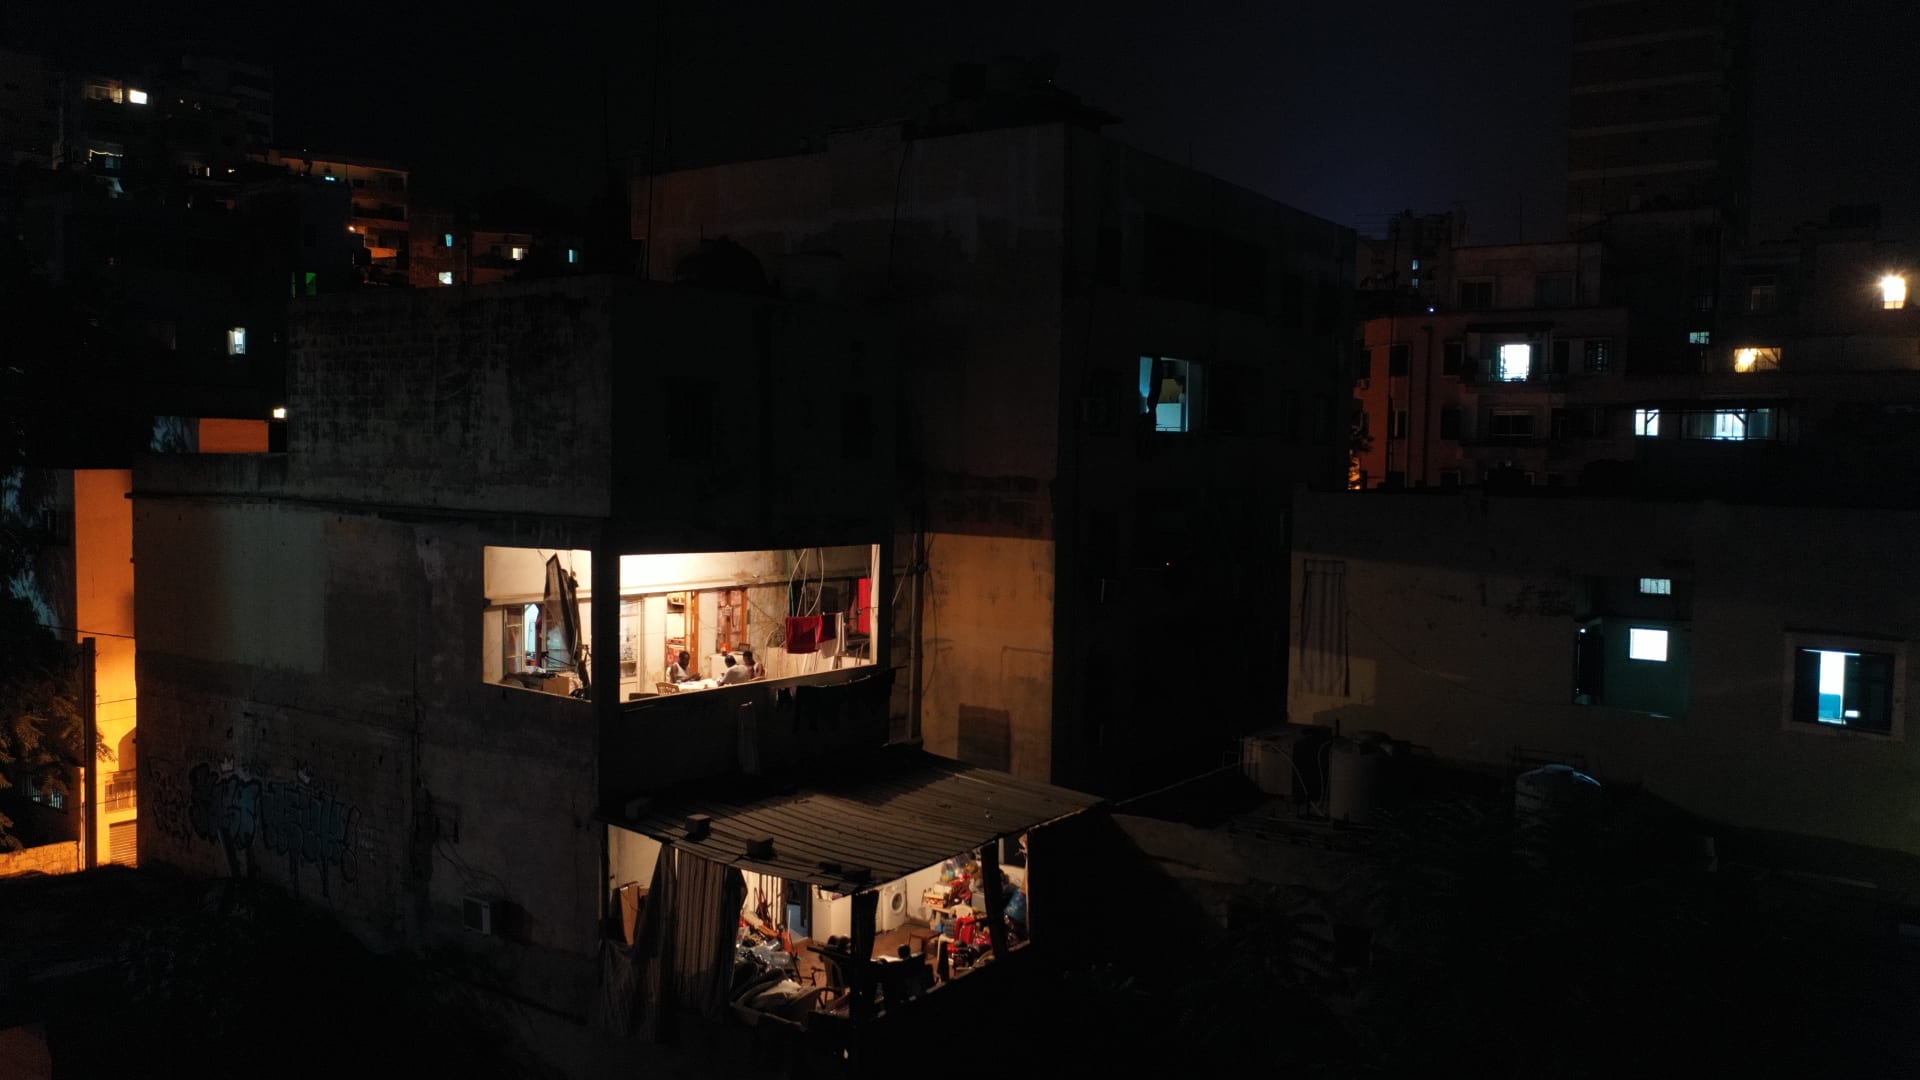 شقة واحدة مضاءة في برج سكني أثناء انقطاع الكهرباء، في 2 أغسطس 2021 في بيروت، لبنان.